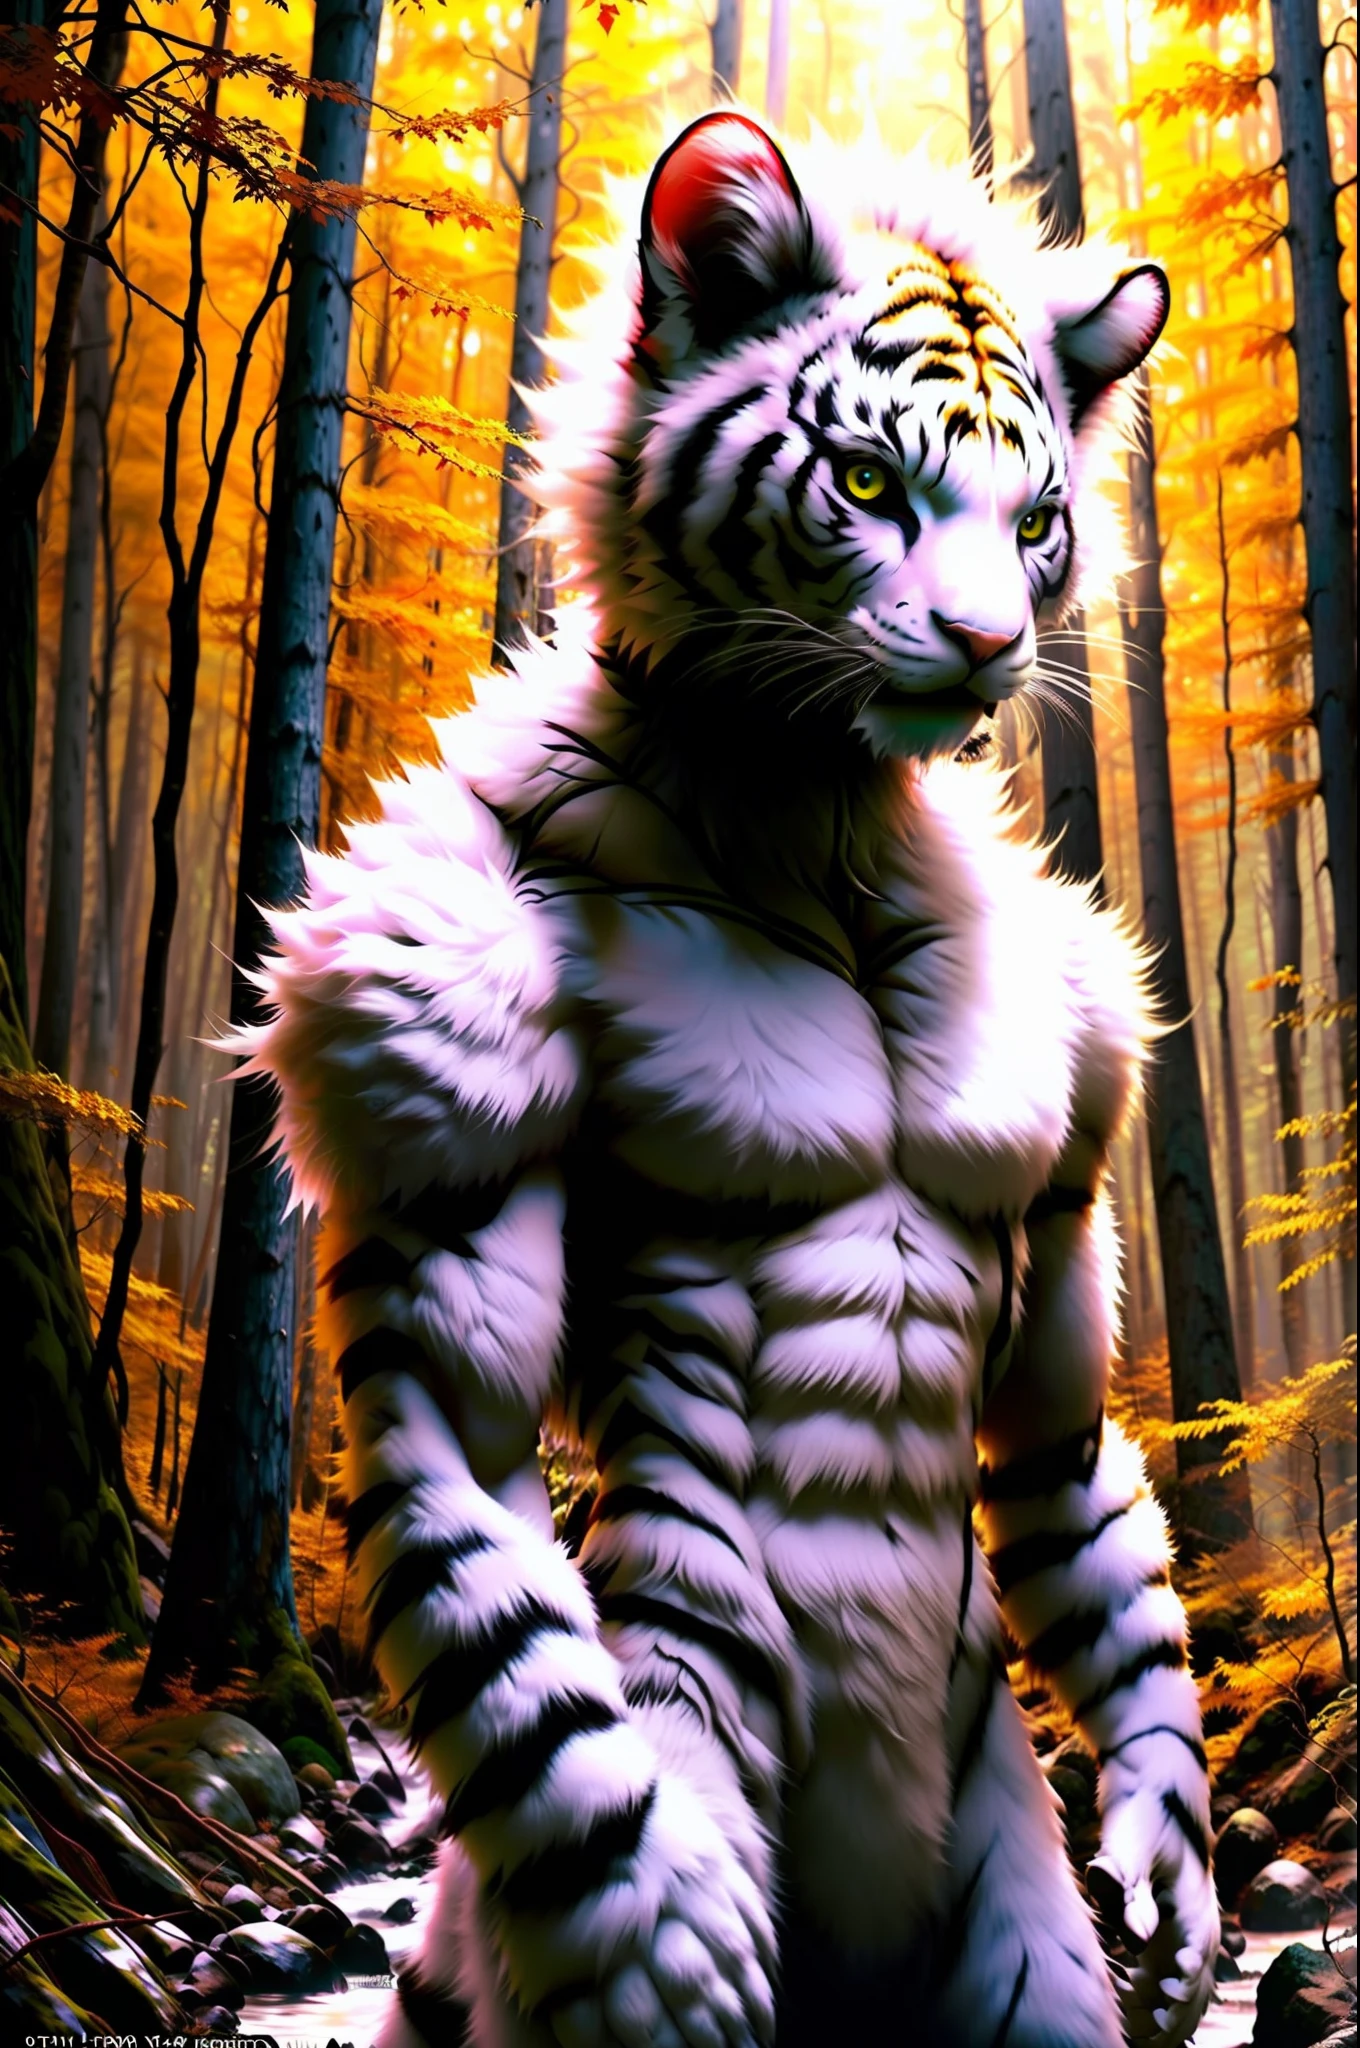 foto en bruto, hombre criatura, tigre hombre gato, white Fur, cabeza grande, in a Forest, 80mm, F/1.8